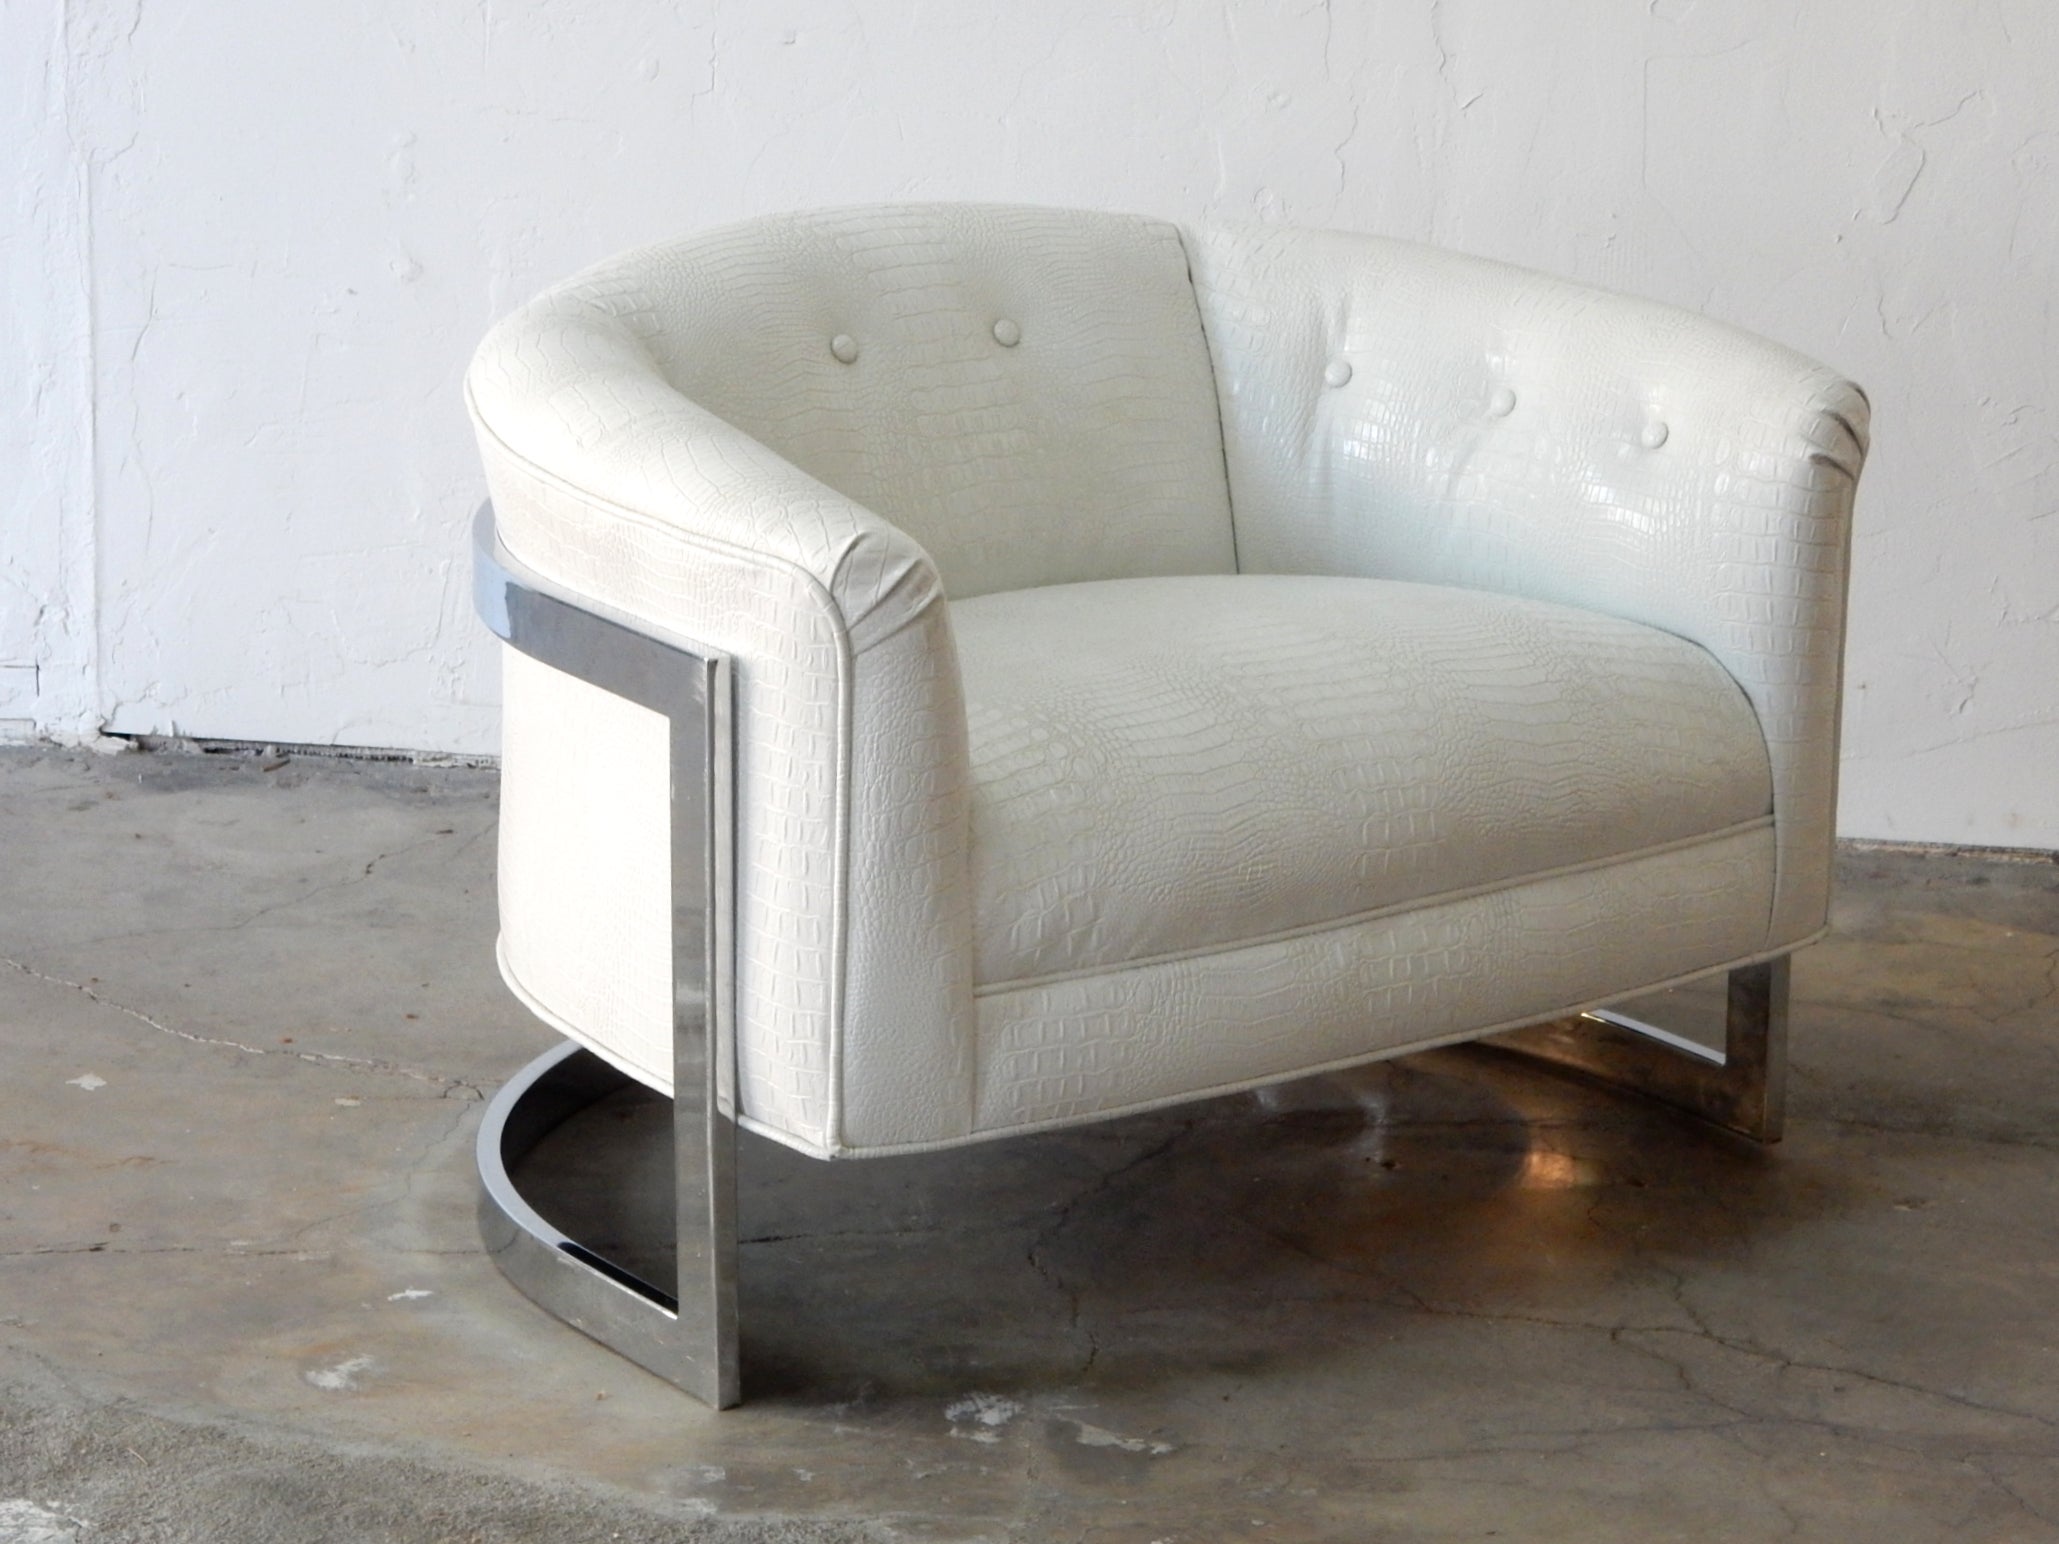 Sehr großer freischwebender Wannenstuhl mit verchromtem Stahlgestell und einer Polsterung aus Albino-Alligatorenlederimitat.
Dieser fabelhafte Stuhl ist neu gepolstert und besonders sauber.